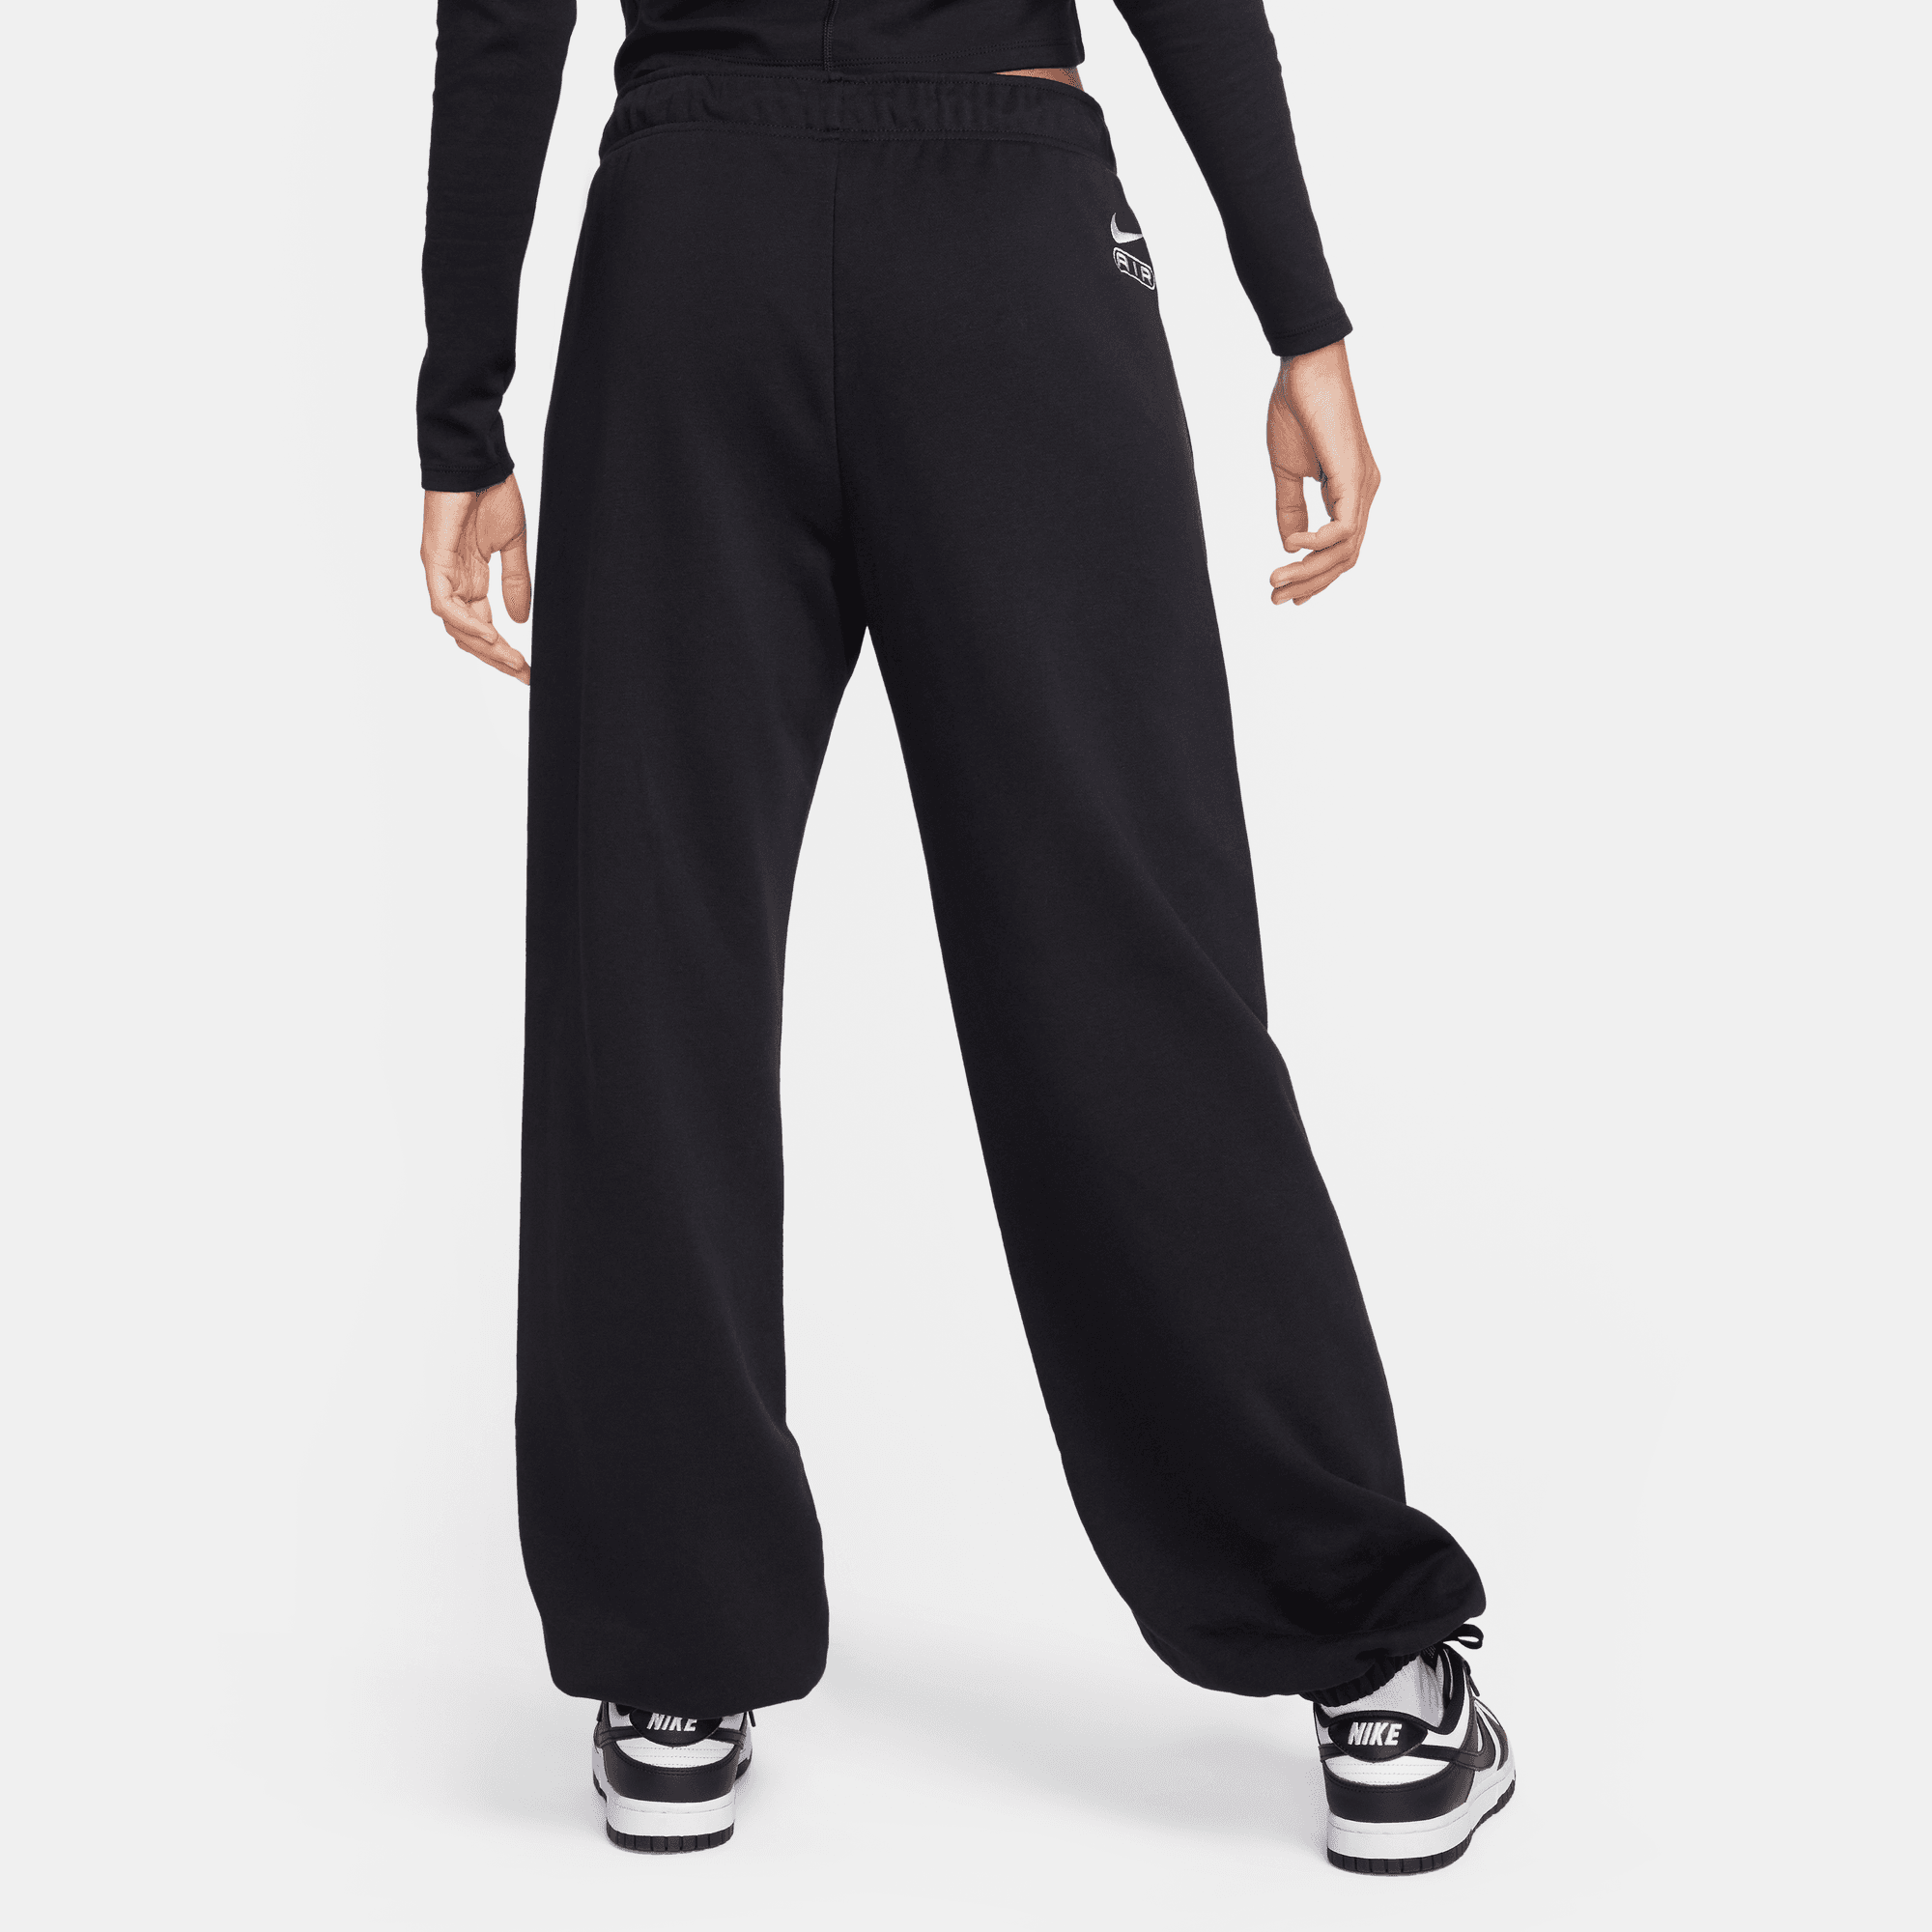 Nike Women's Sportswear Nsw Track Pants, Black - Size Large